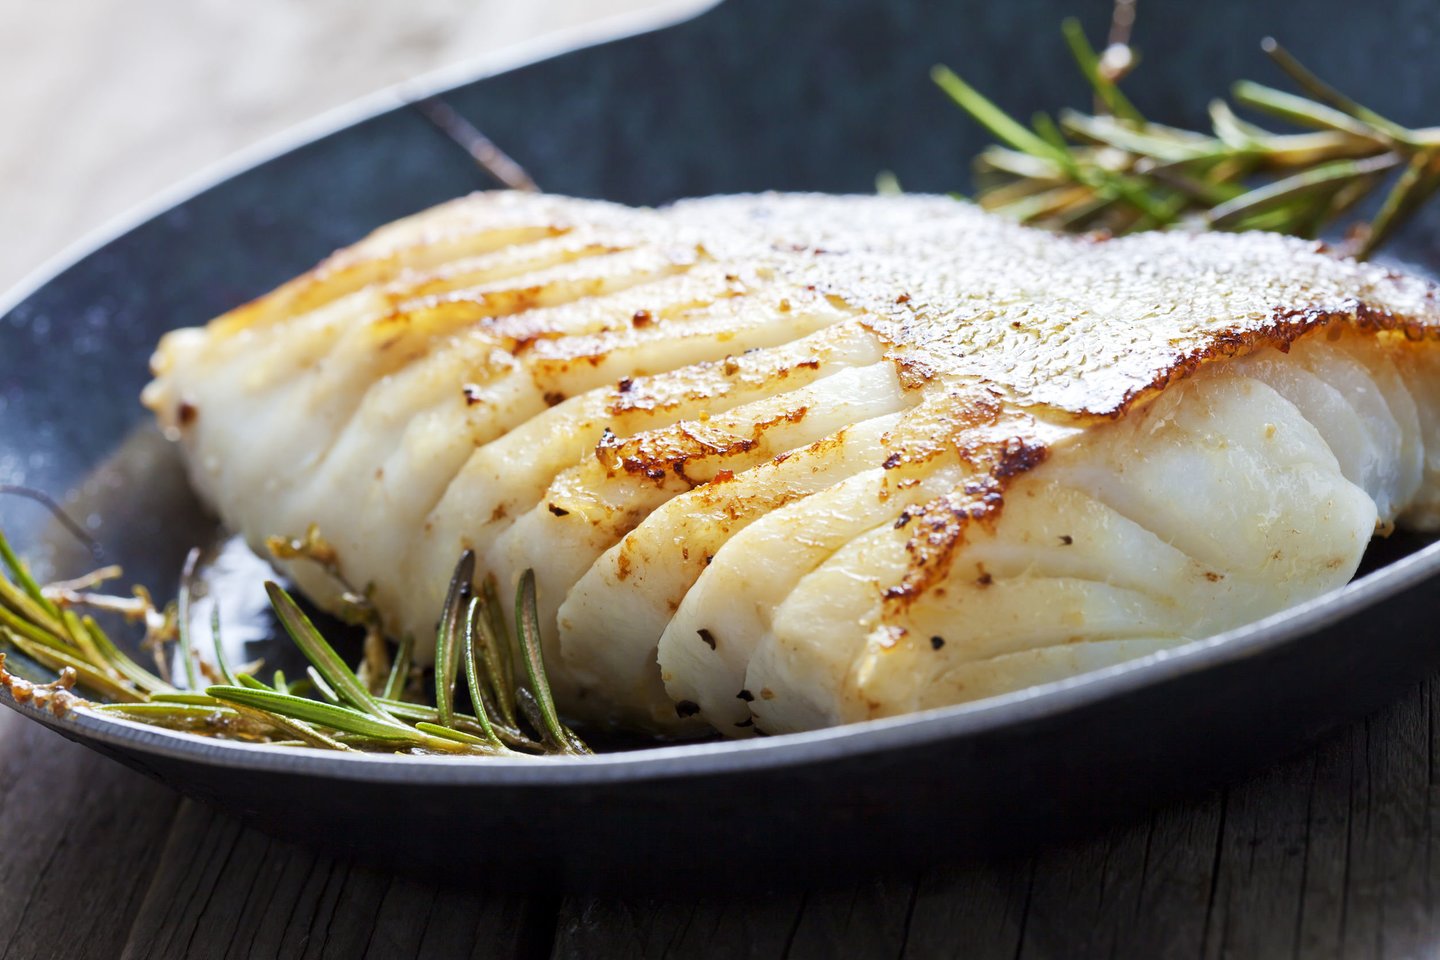  Kaip ir ankštines daržoves, žuvį geriausia skanauti ruoštą garuose, bet galima kepti ir orkaitėje su daug daržovių.<br> 123rf nuotr.